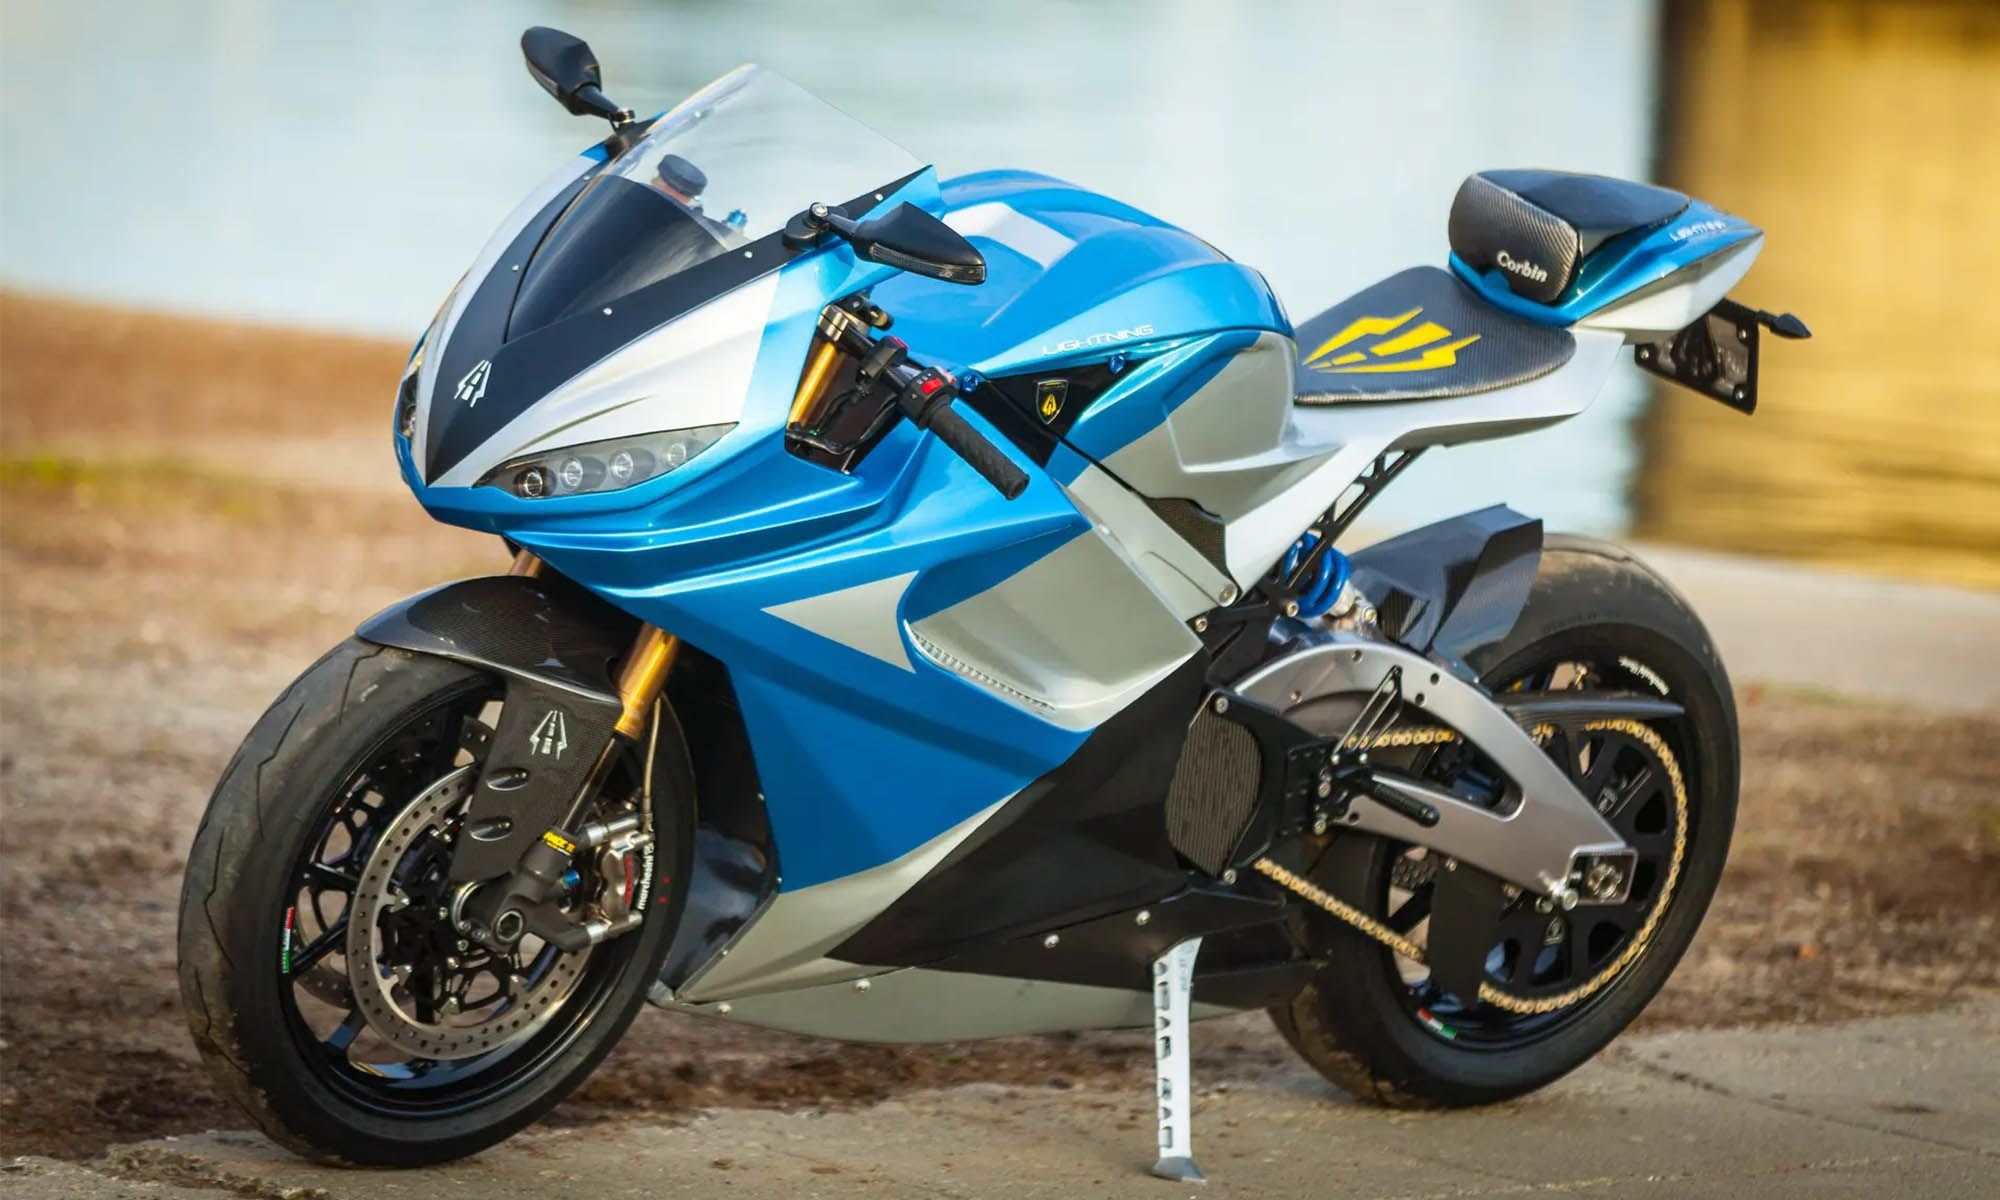 Las motocicletas eléctricas de Lightning con baterías de silicio superan a las de gasolina en prestaciones y autonomía.